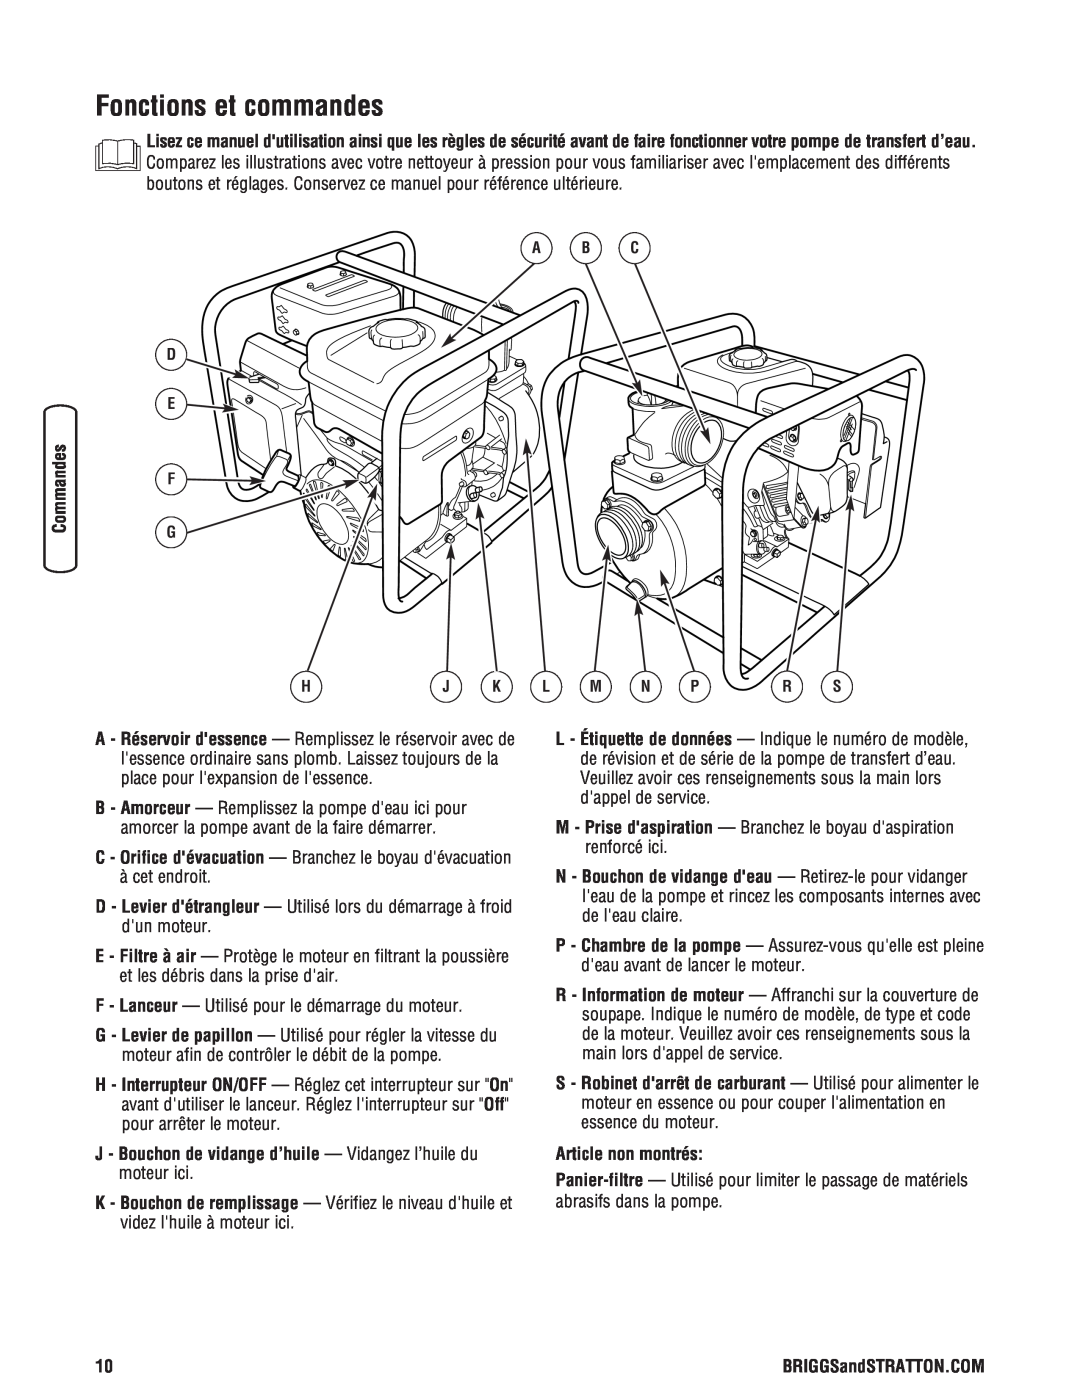 Briggs & Stratton Water Transfer Pump manual Fonctions et commandes, Article non montrés 